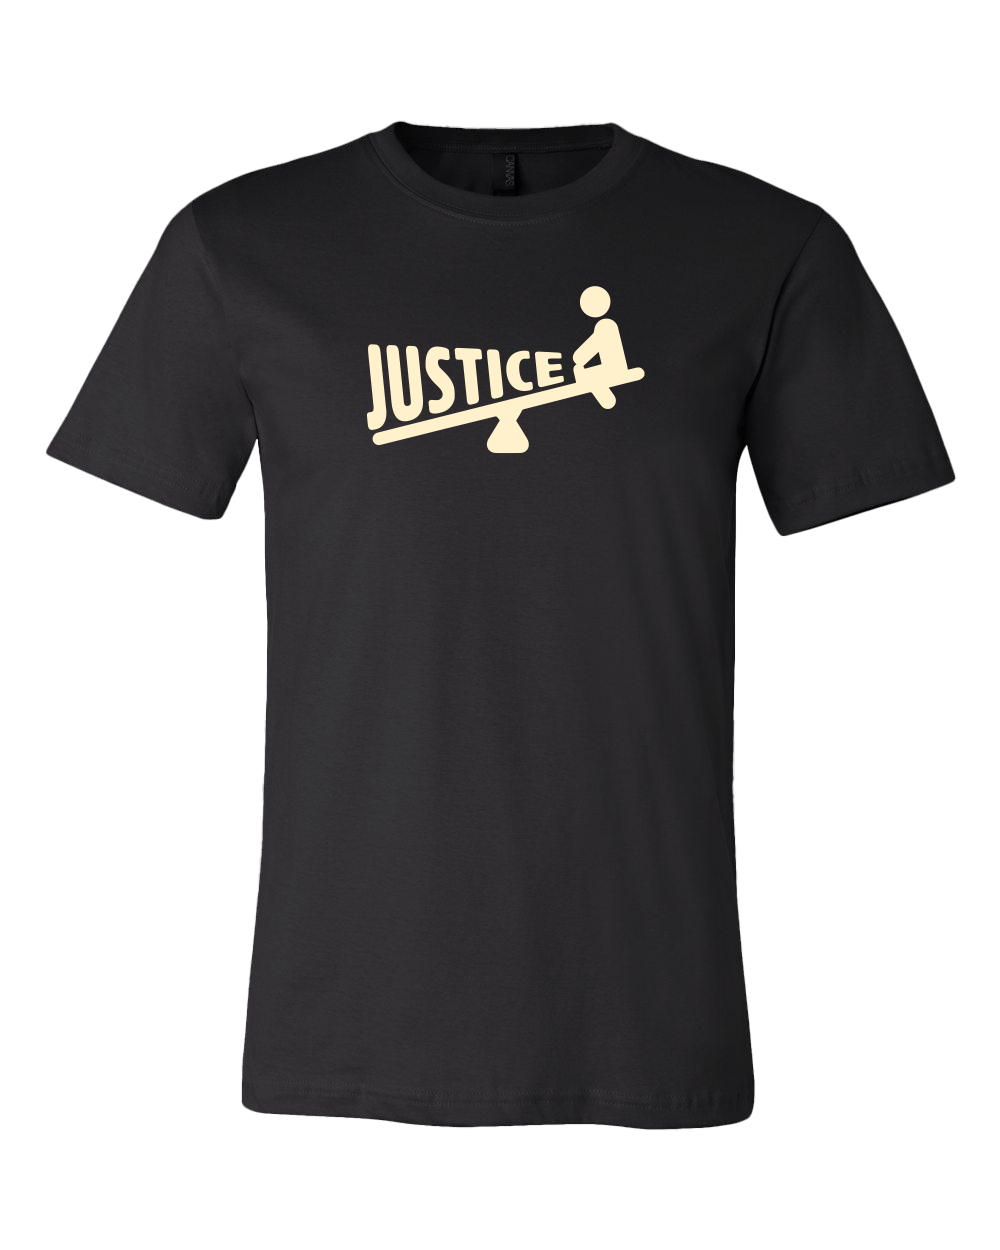 Justice Unisex Tee - Black